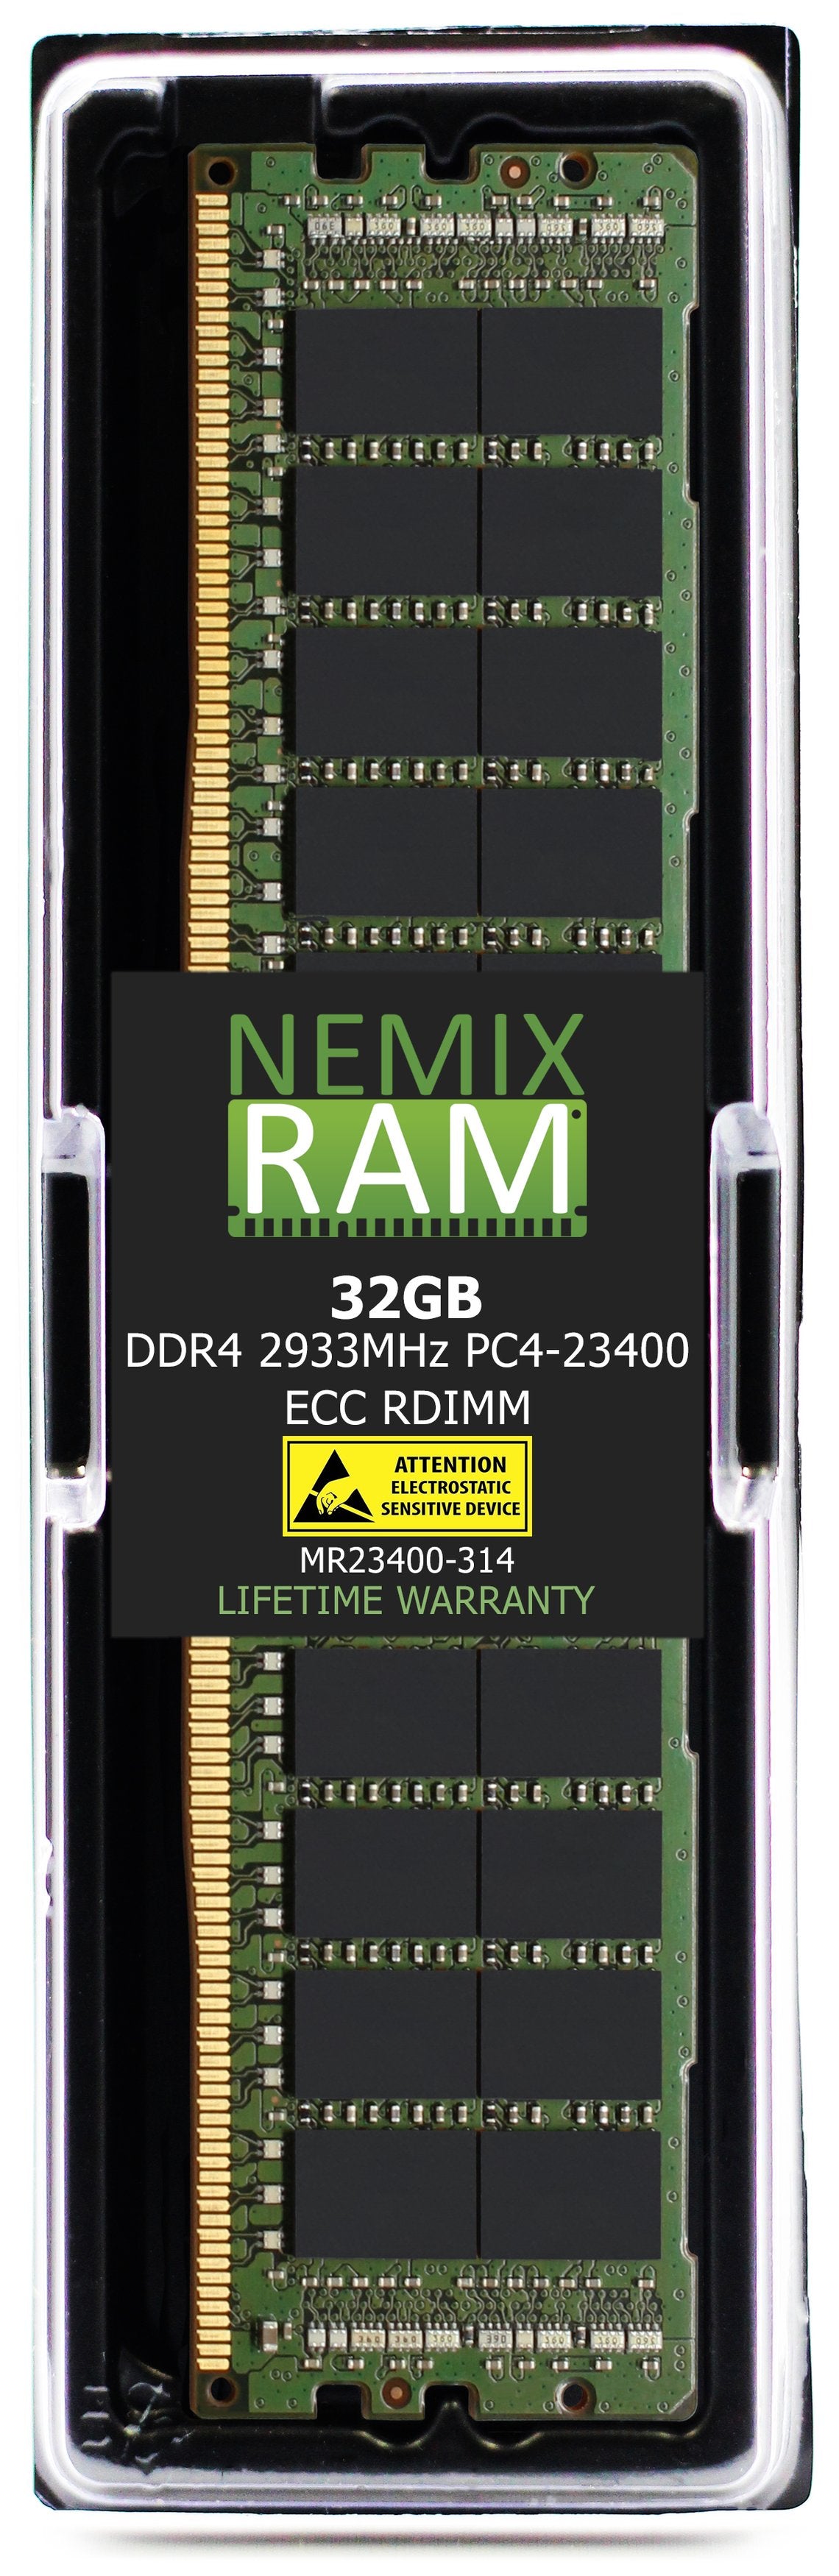 Hynix HMAA4GR7AJR4N-WM 32GB DDR4 2933MHZ PC4-23400 RDIMM Compatible Memory Module